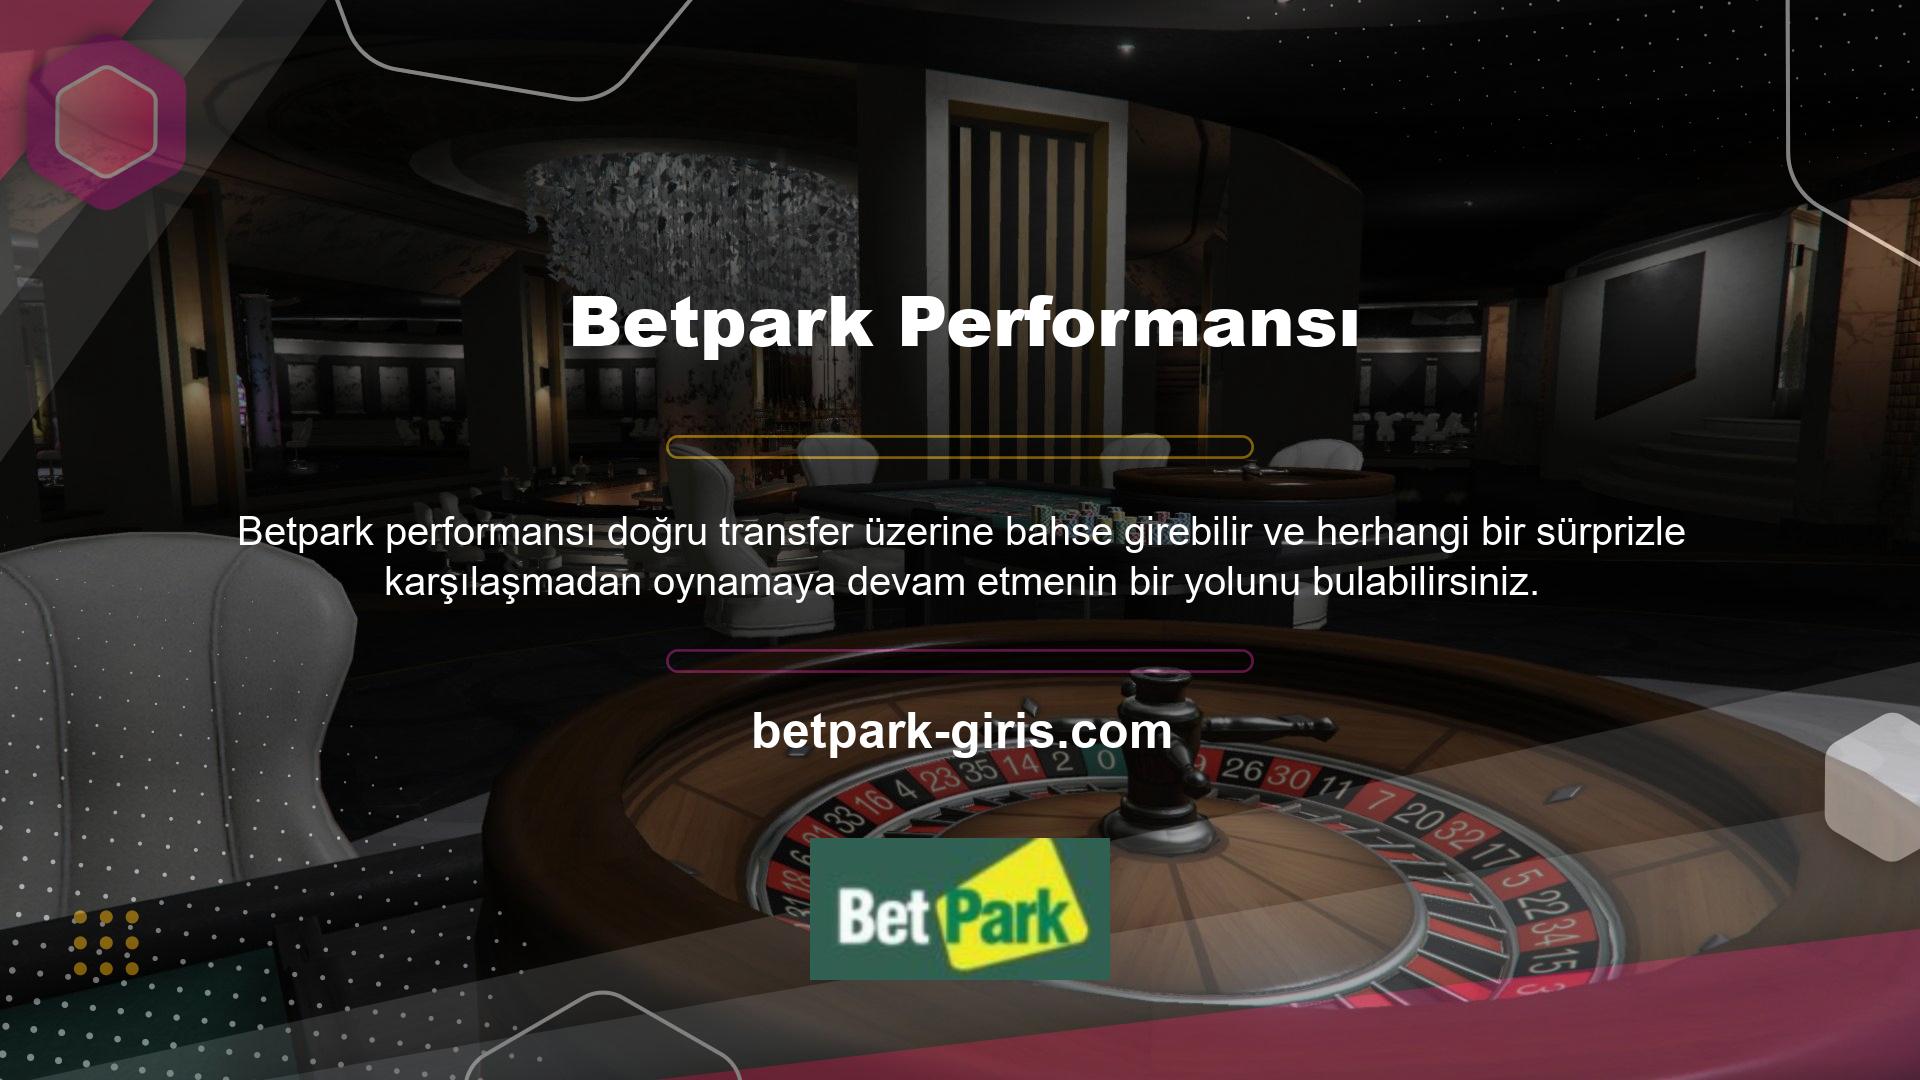 Betpark, mümkün olan en iyi performansı elde etmek için kaynaklarla başarılı bir şekilde geliştirilmiş bir web sitesidir